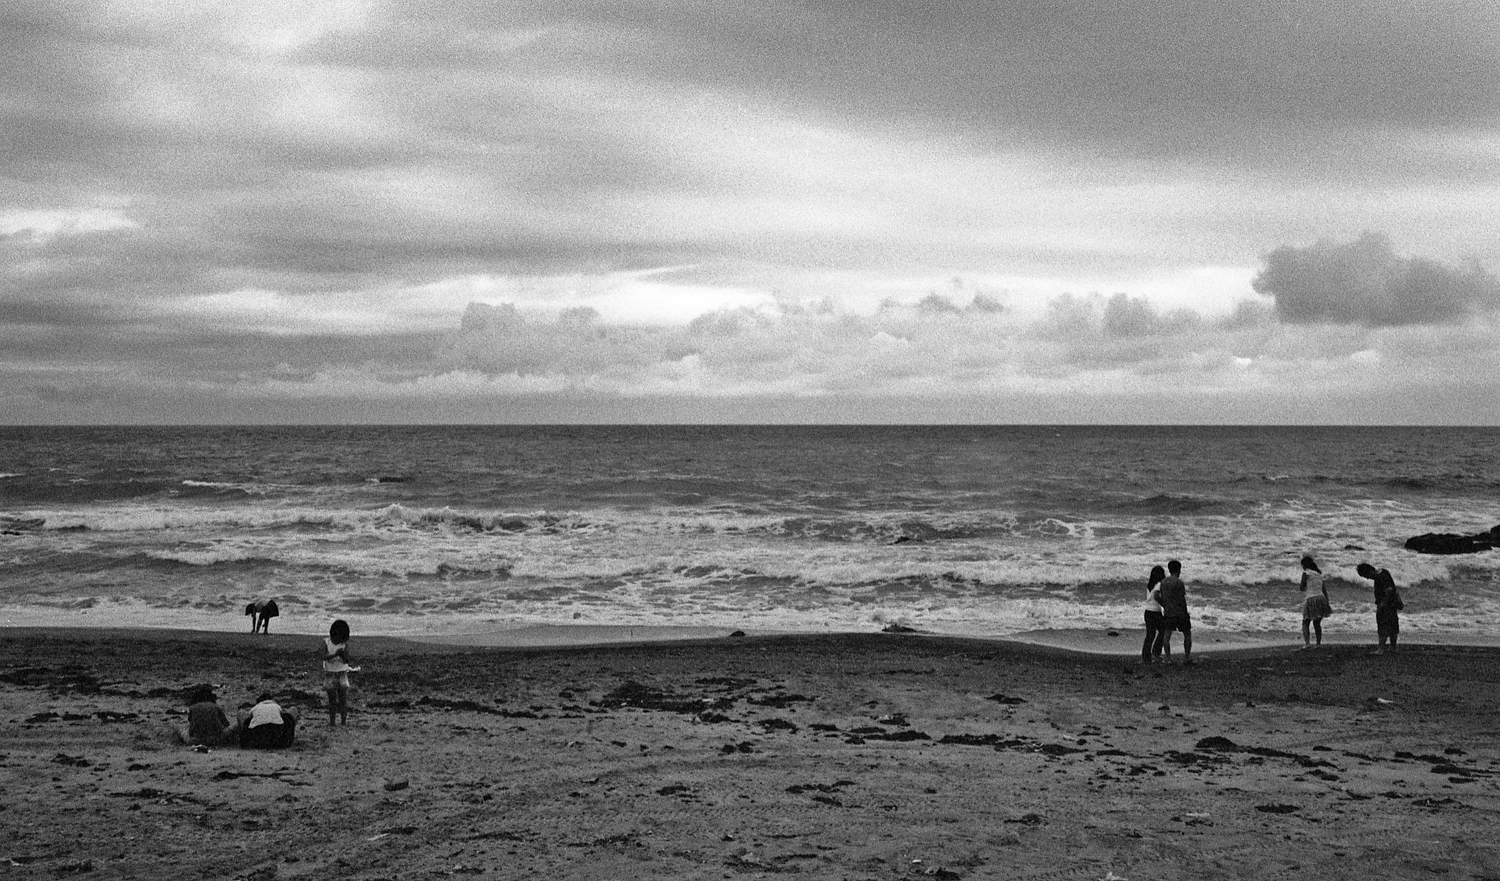 김경훈 흑백사진 전시회, Memory - 시간과 공간 그리고 사람, 저마다의 바다